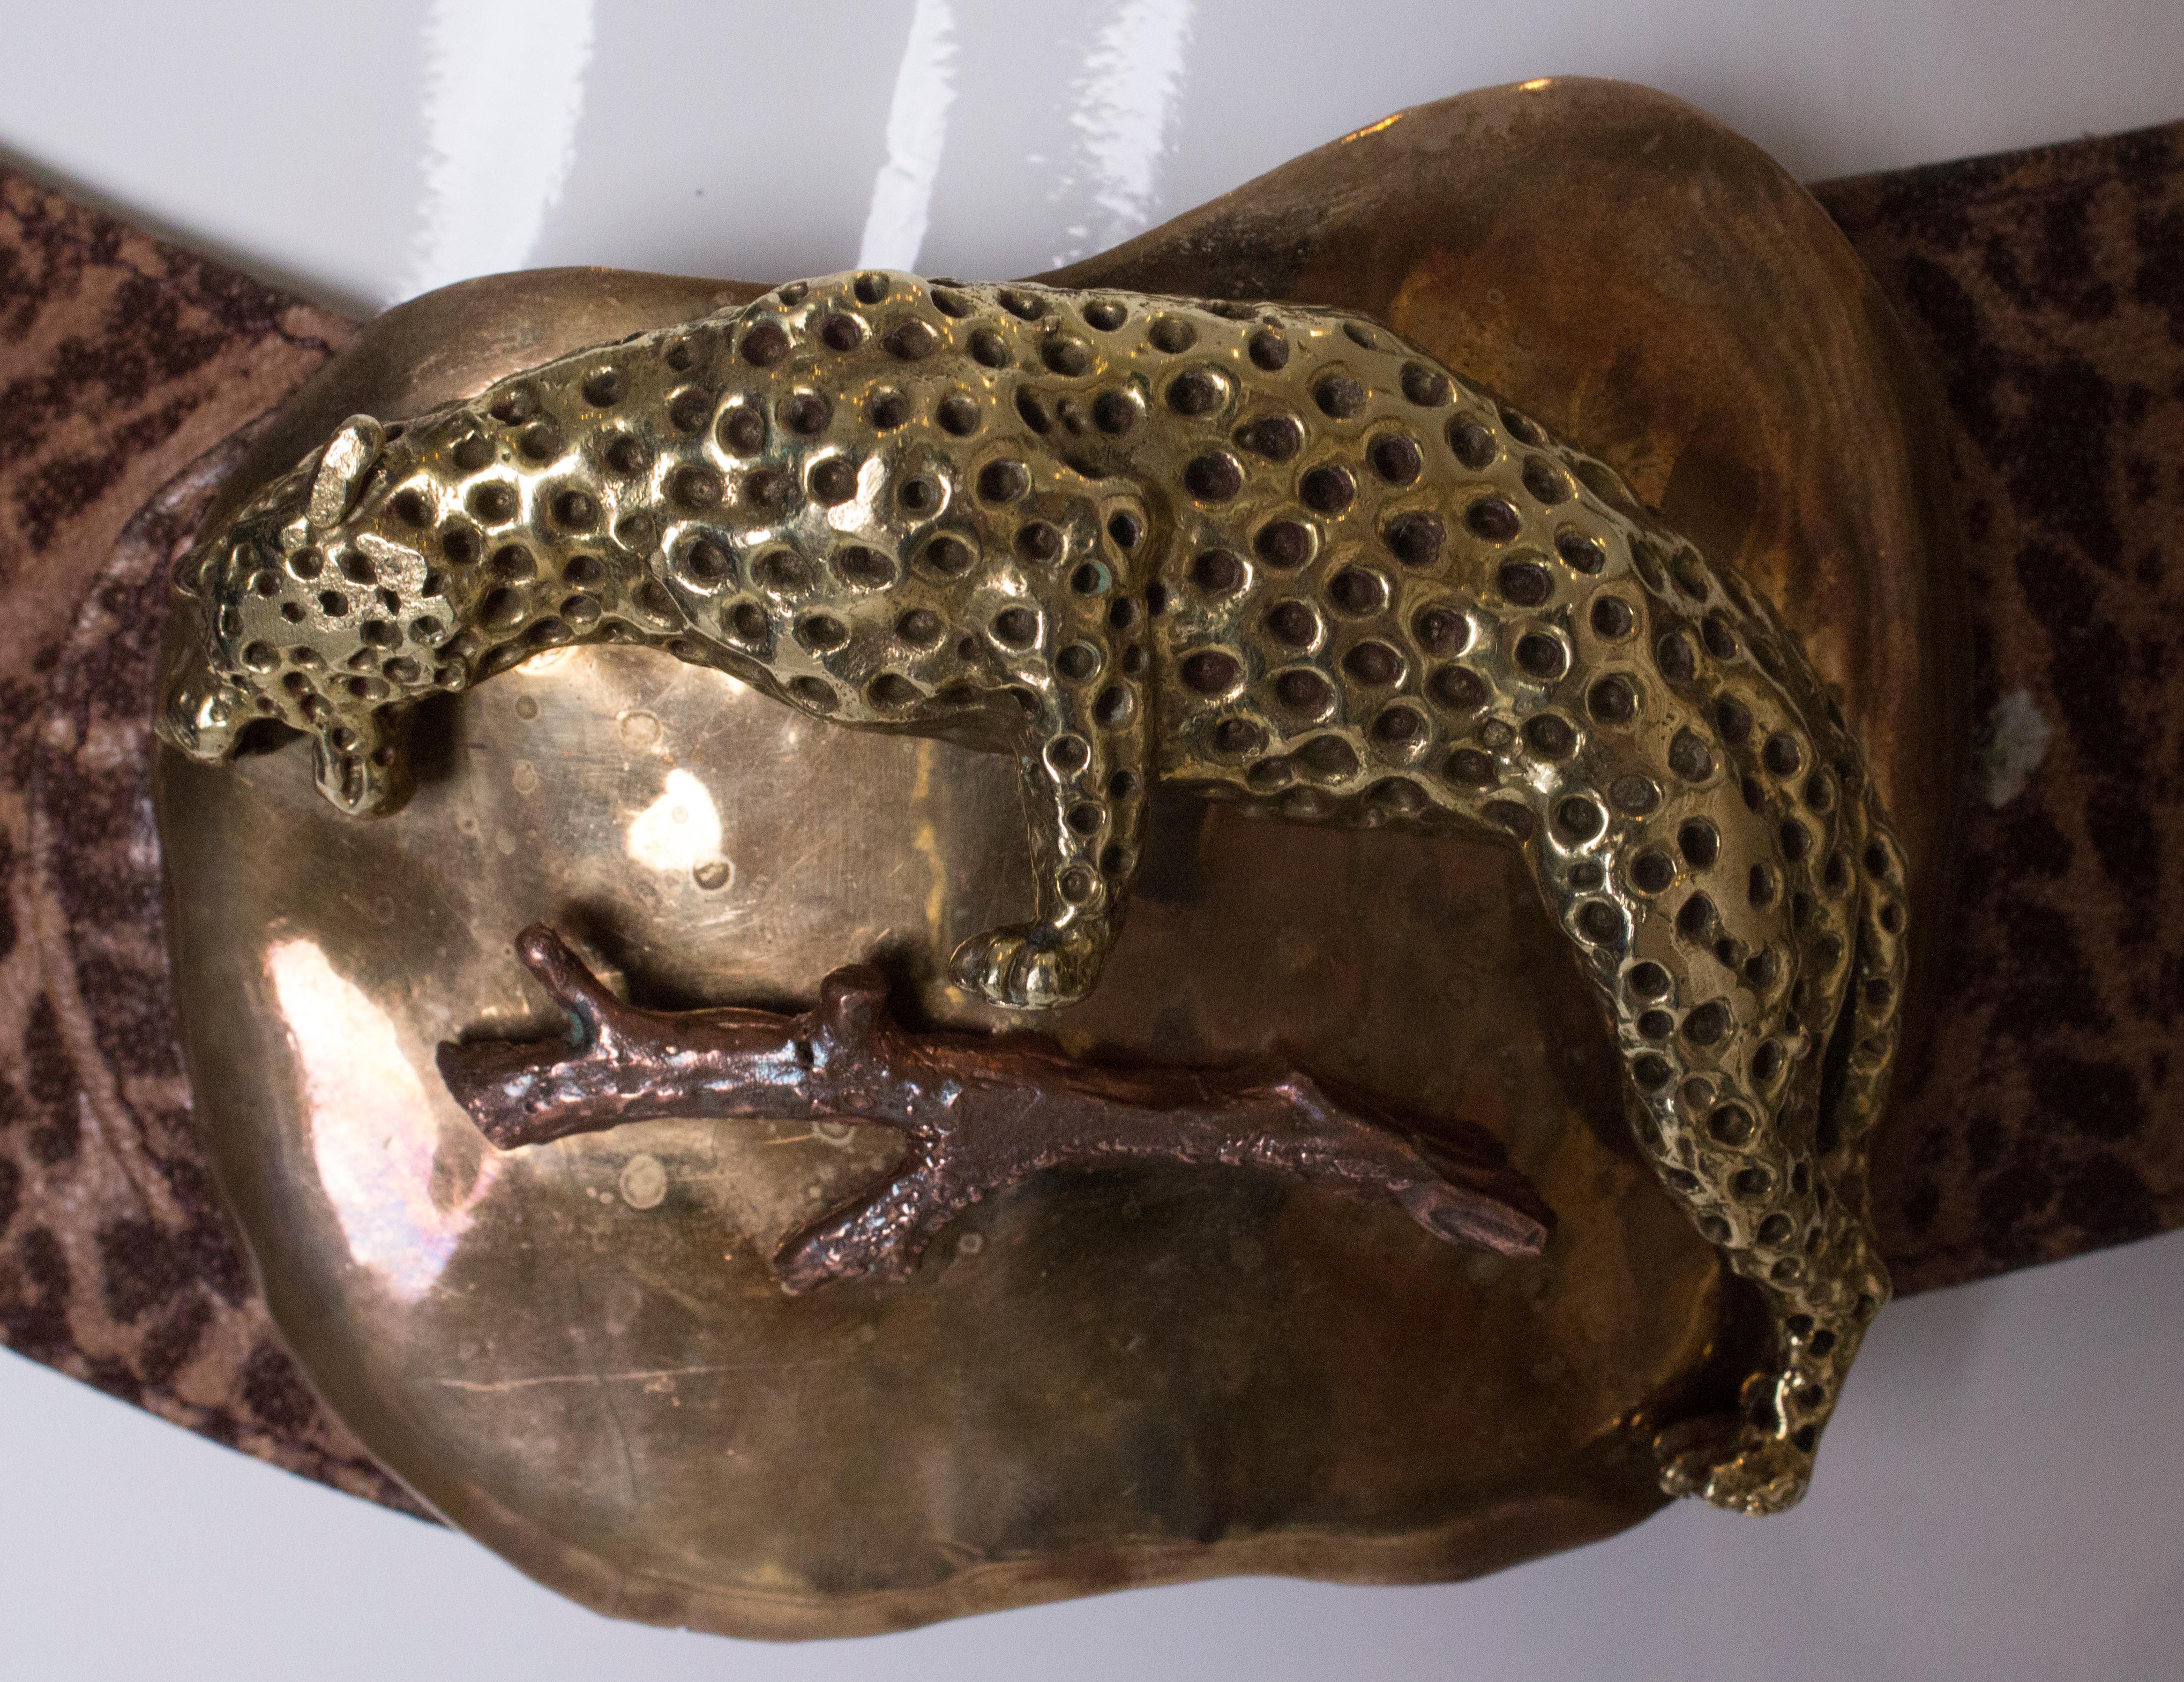 Eine wunderschöne Kupferschnalle mit Geparden- und Twim-Verzierung. 
Die Schnalle misst 4 1/2'' breit und 4'' hoch, der Gürtel ist 32'' lang und 2 1/2''.